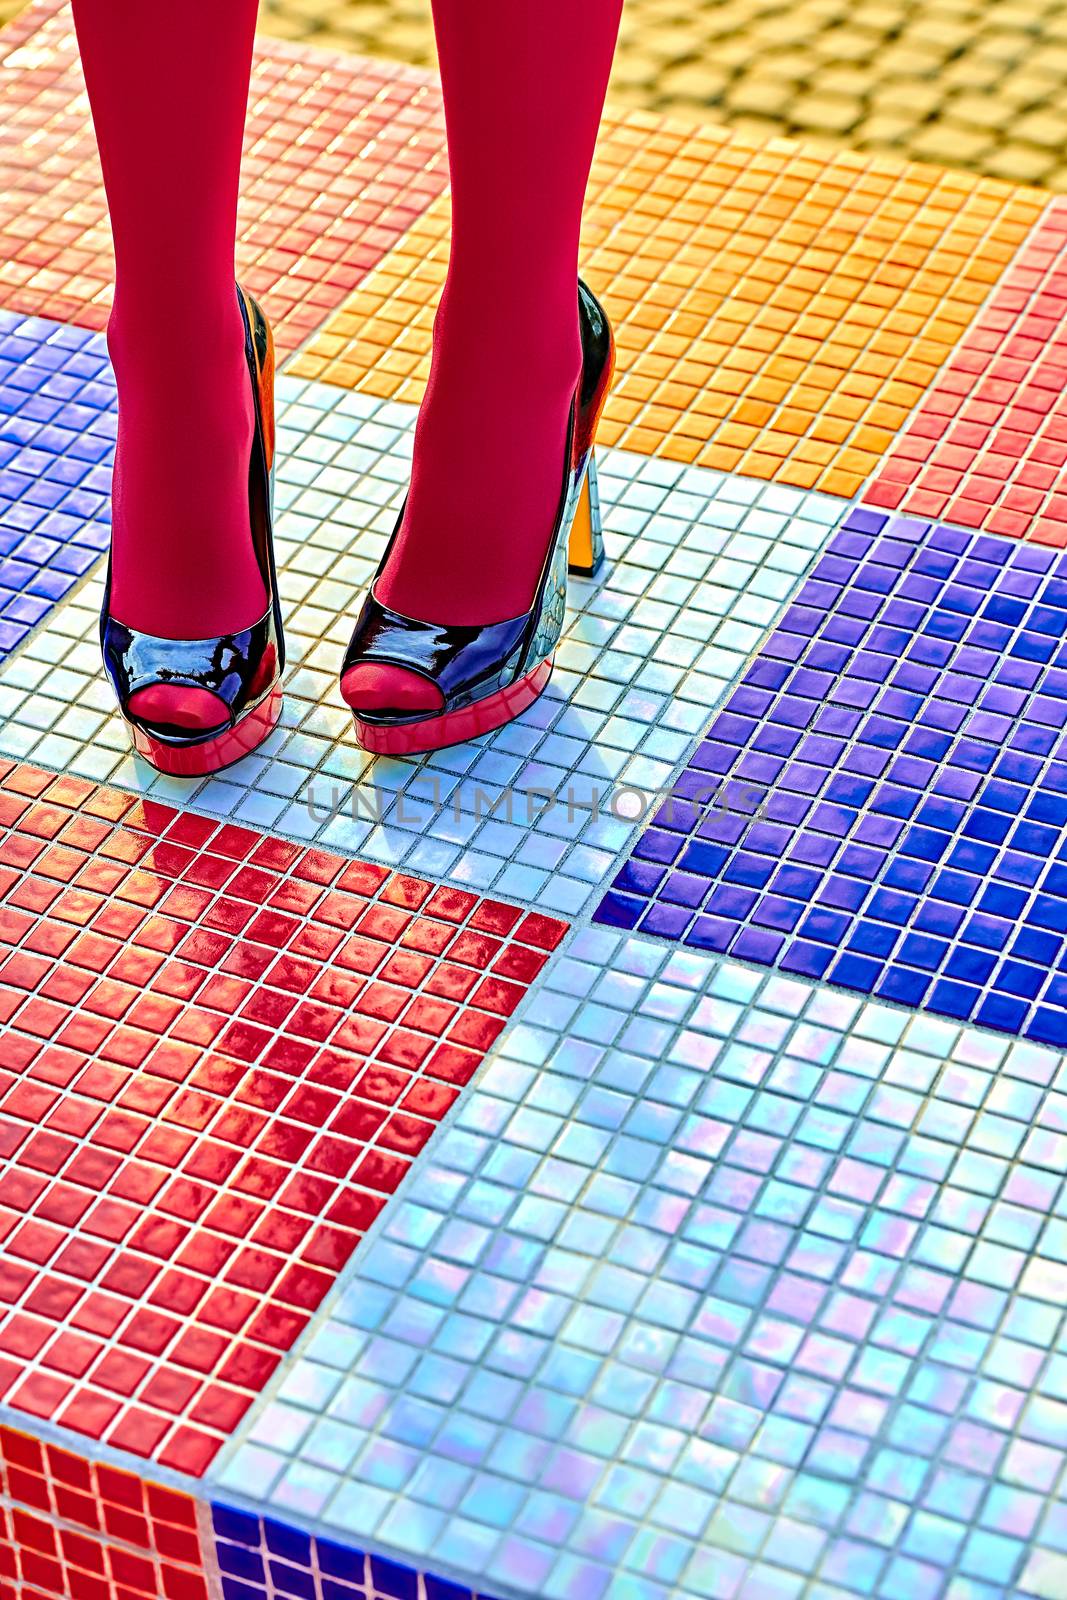 Fashion urban womens legs, heels. Vivid geometry by 918